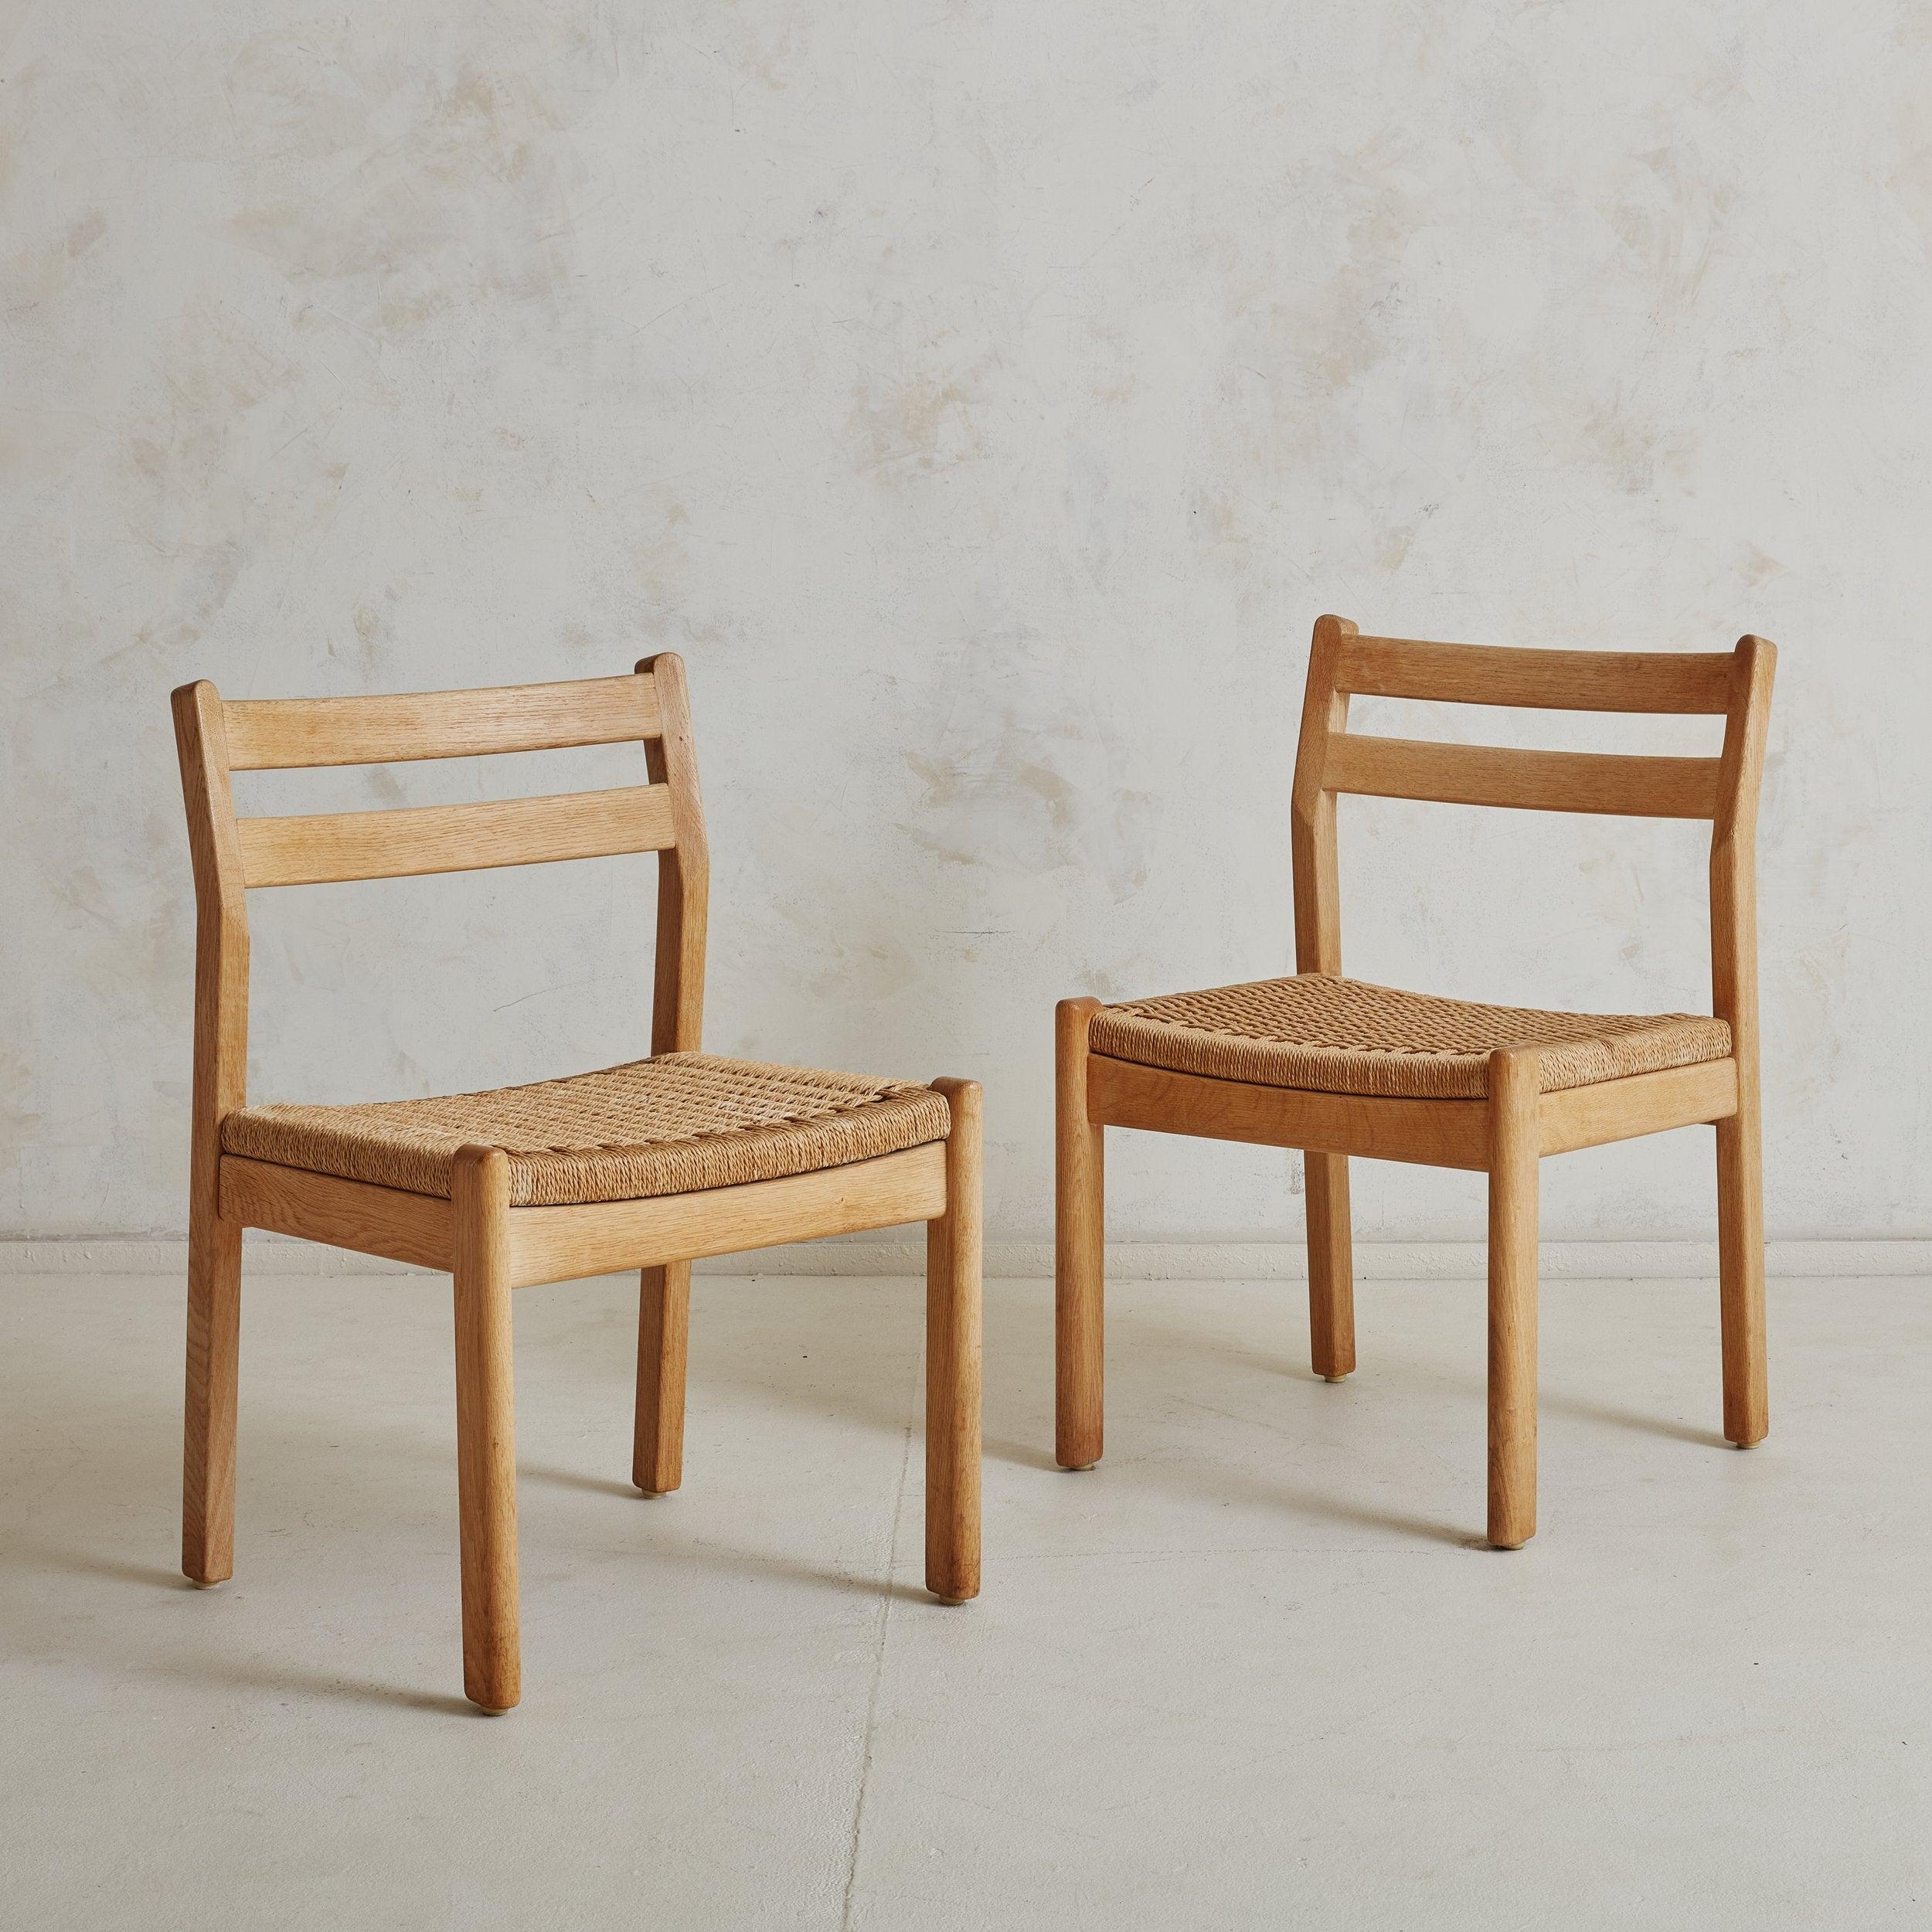 Satz von 3 dänischen Esszimmerstühlen aus Holz und geflochtenen Papierschnüren, entworfen von Kurt Østervig in den 1960er Jahren. Diese skandinavisch-modernen Esszimmerstühle zeichnen sich durch einen minimalistischen Rahmen aus blondem Holz und